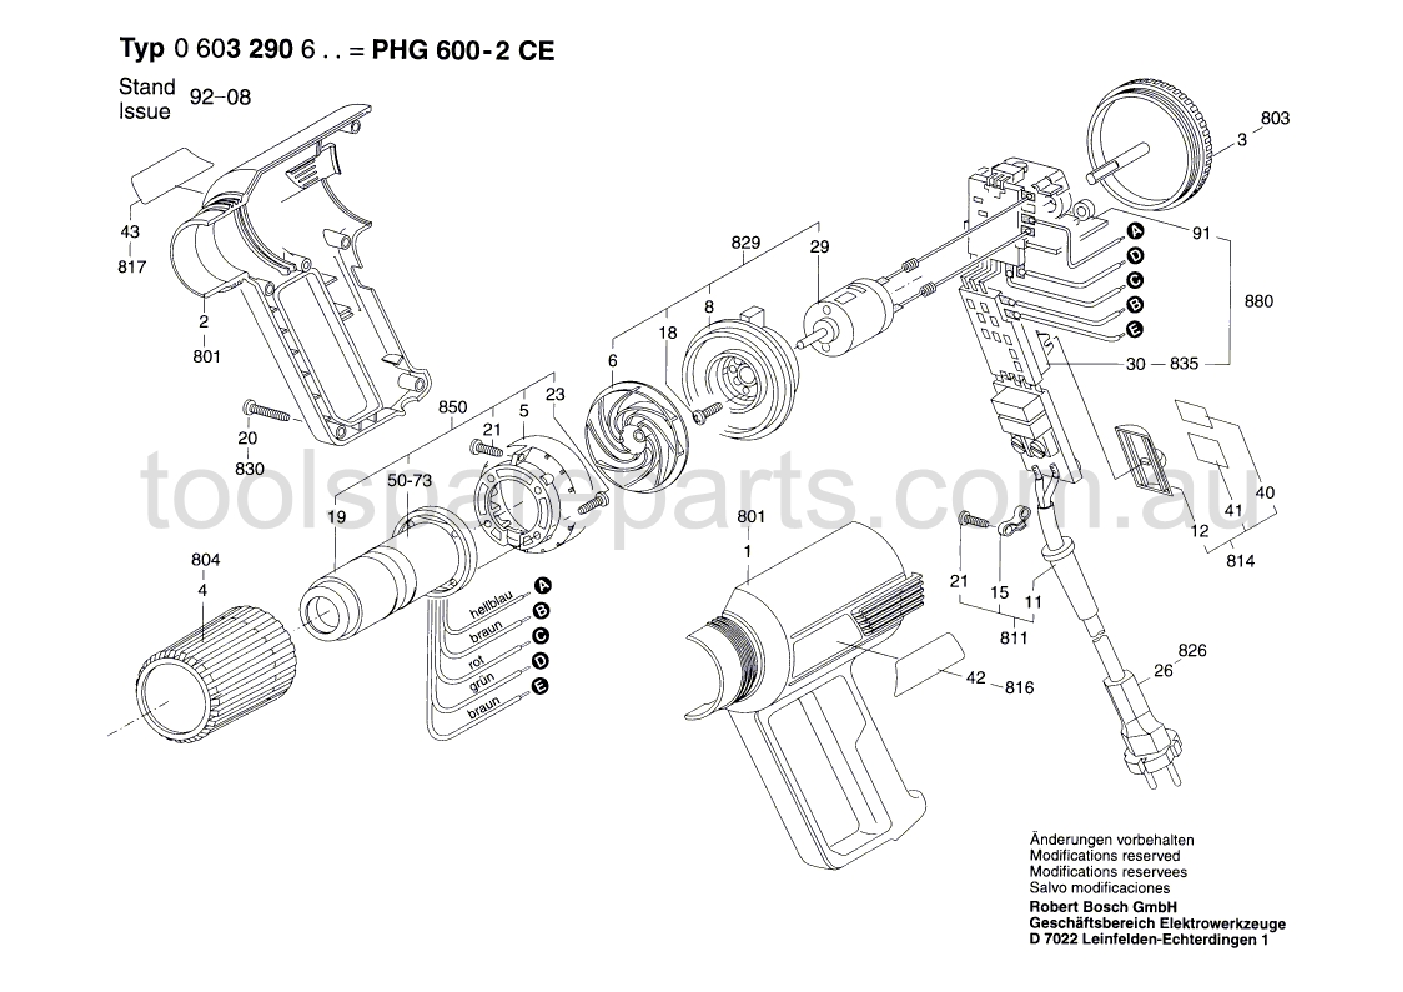 Bosch PHG 600-2 CE 0603290637  Diagram 1